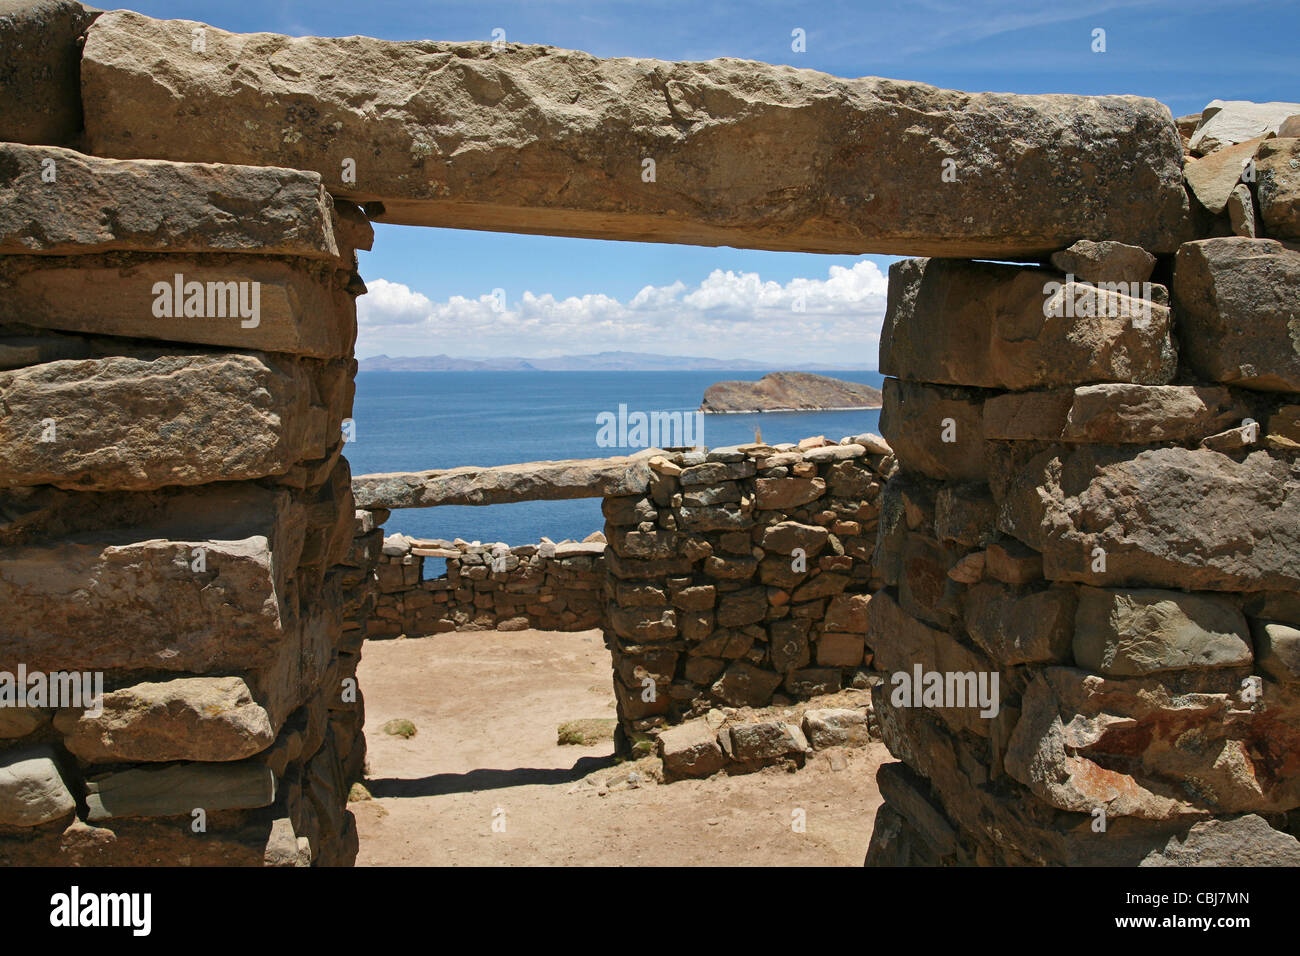 Ruins of the Inca temple Templo del Sol / Temple of the sun on the island Isla del Sol in Lake Titicaca, Bolivia Stock Photo